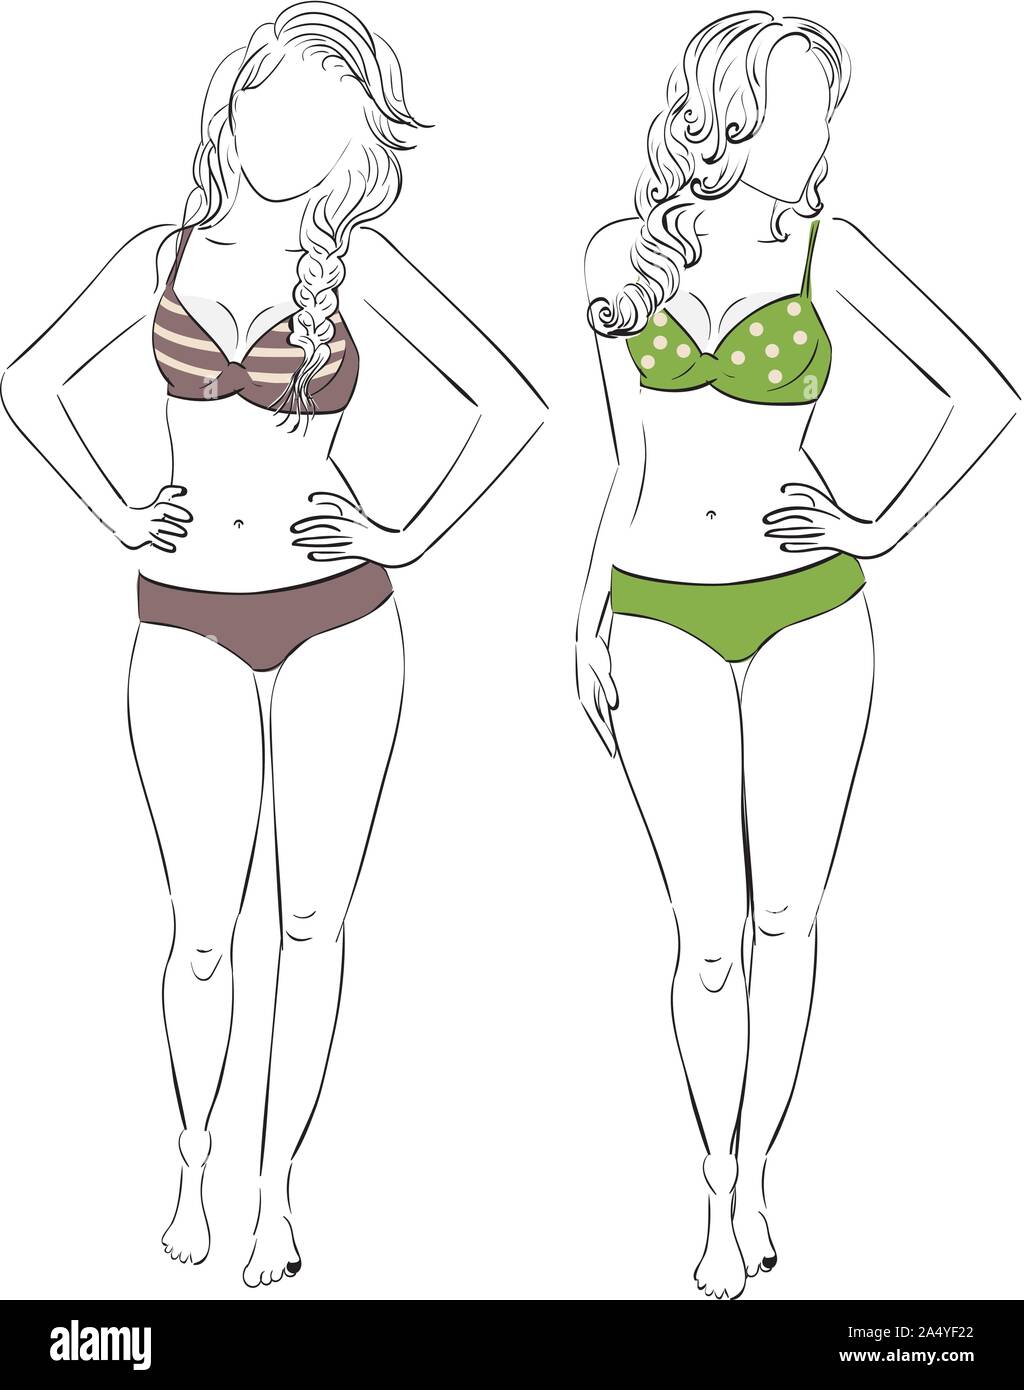 Vetor de Hourglass body shape. Female character in underwear do